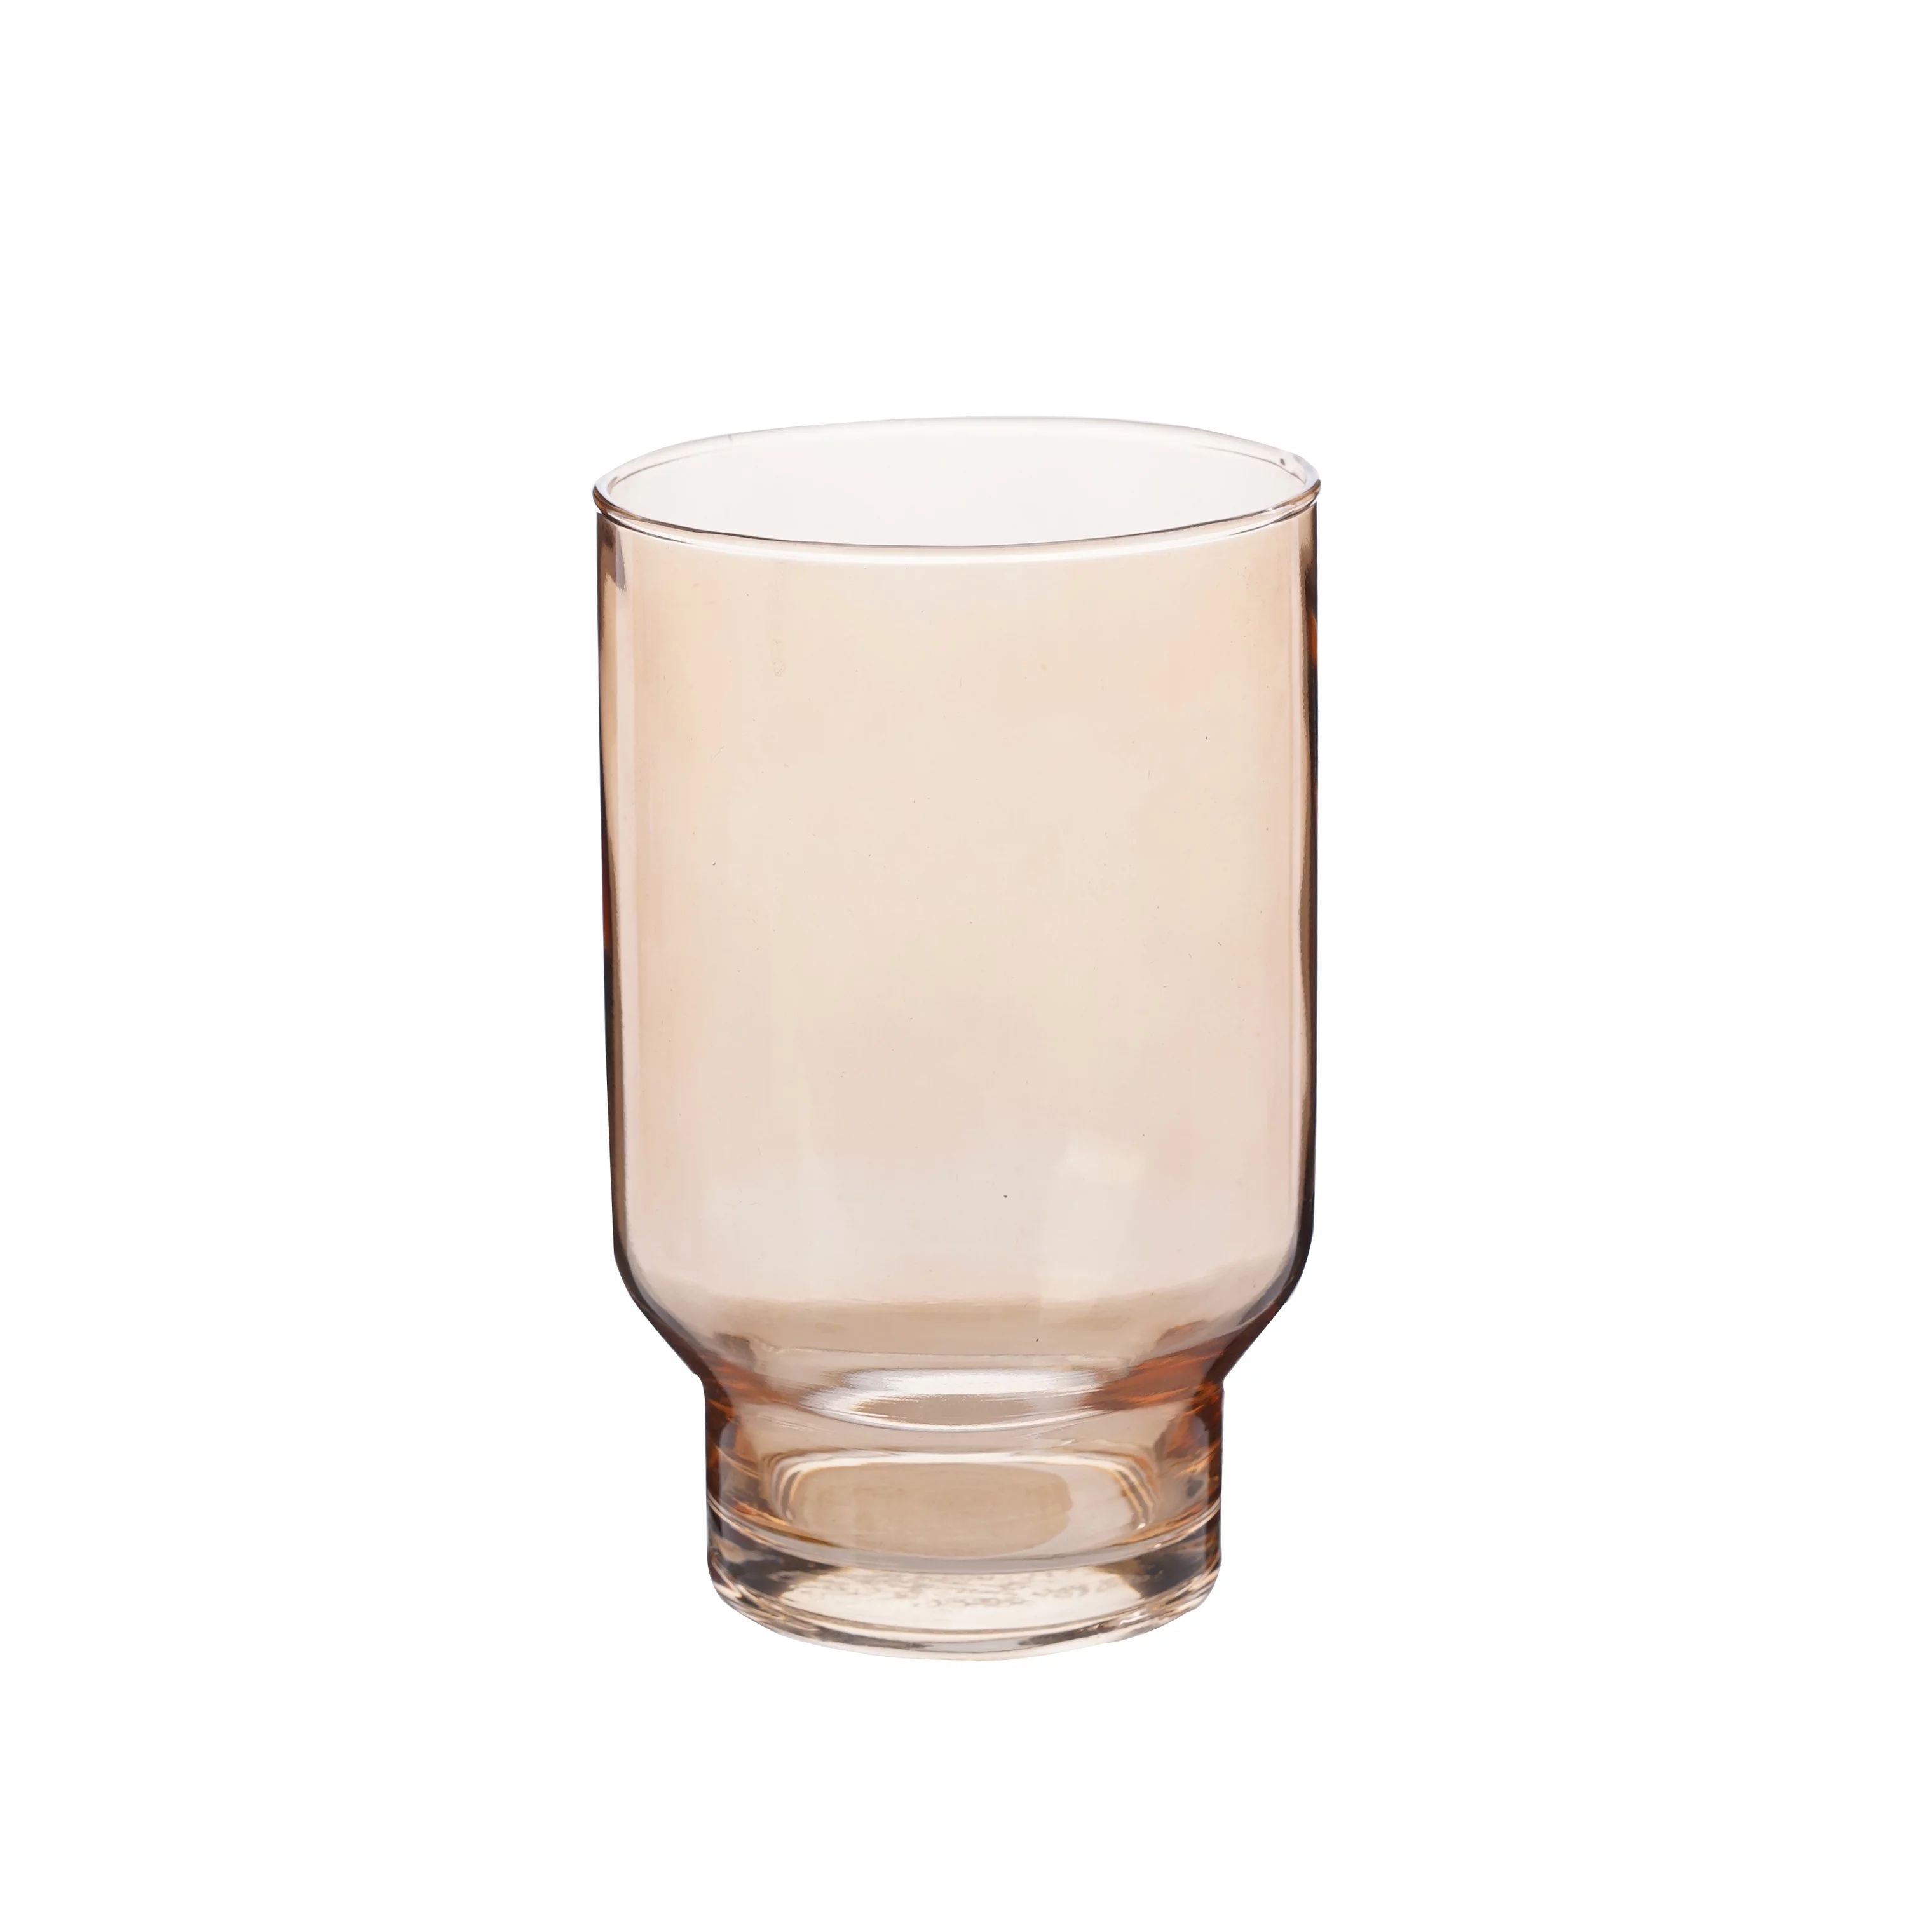 Better Homes & Gardens 17oz Pedestal Drinking Glass, Amber | Walmart (US)